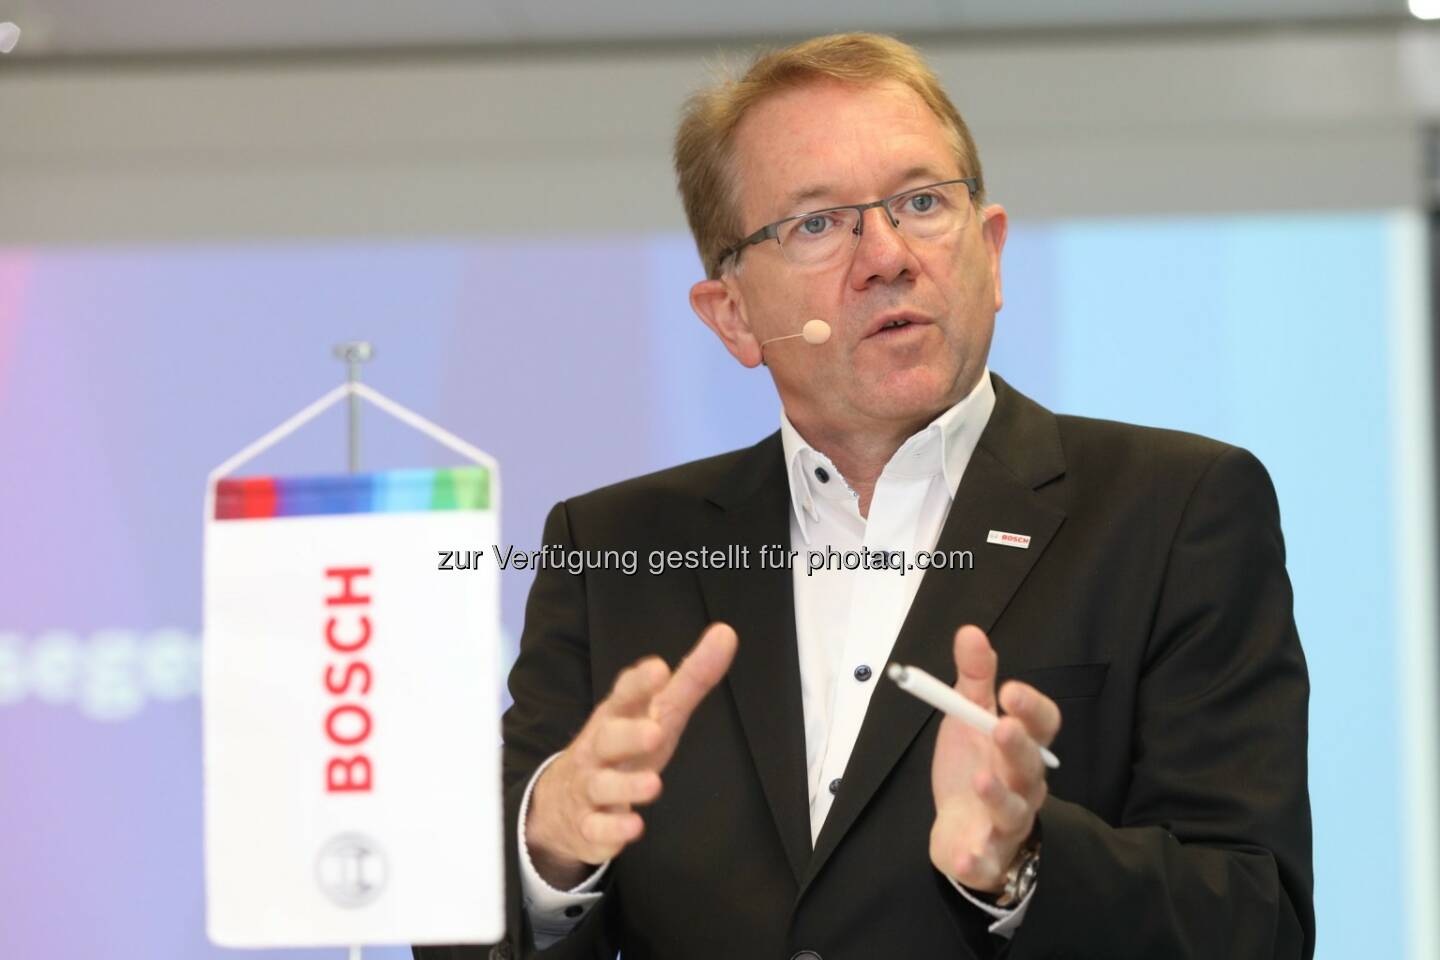 Dr. Klaus Peter Fouquet (Bosch Österreich-Chef) - Robert Bosch AG: Weiterhin gute Entwicklung von Bosch in Österreich (Fotocredit: Robert Bosch AG/APA-Fotoservice/Schedl)